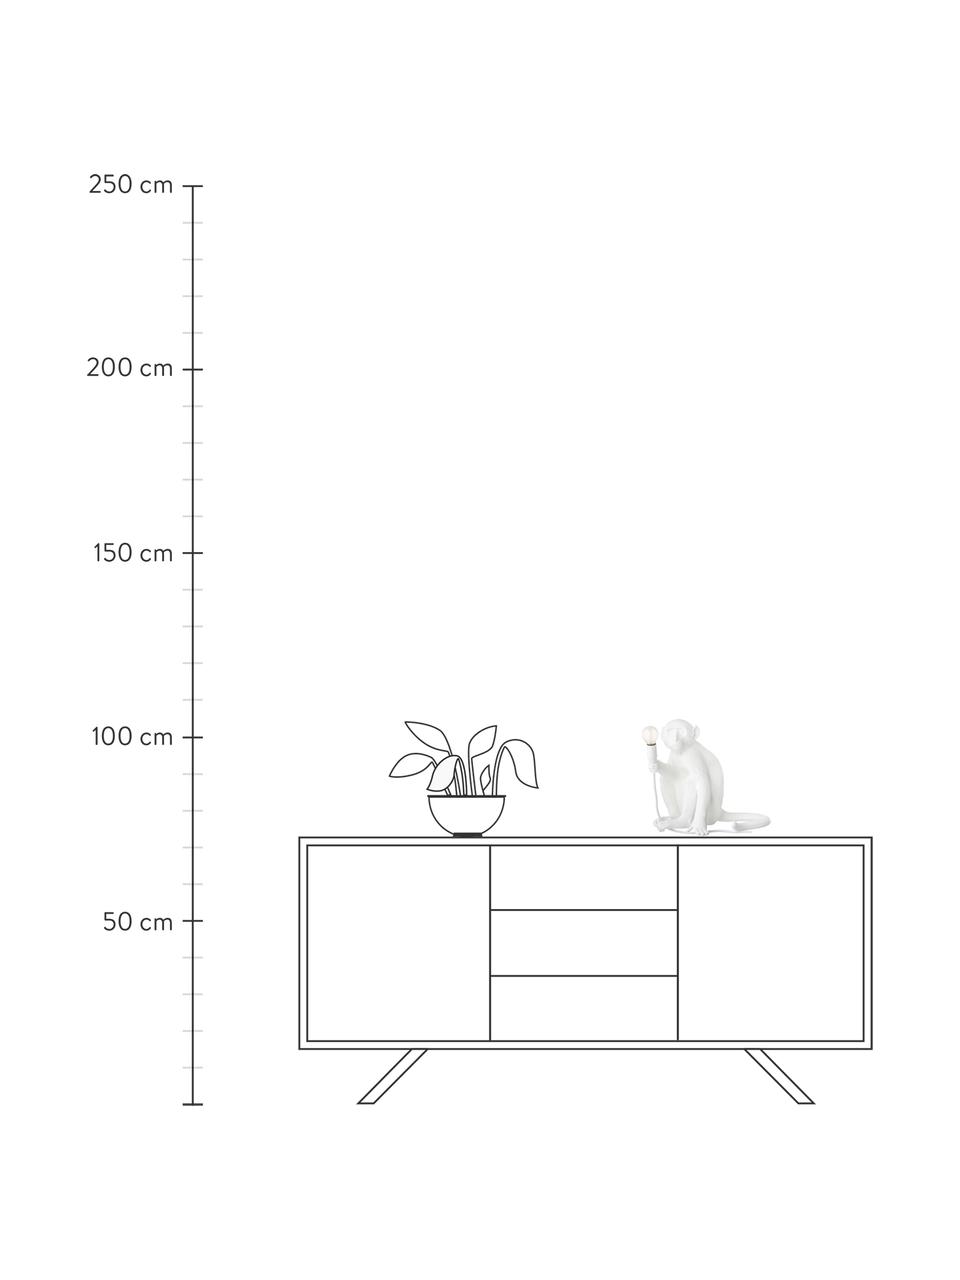 Design Tischlampe Monkey, Weiß, 34 x 32 cm